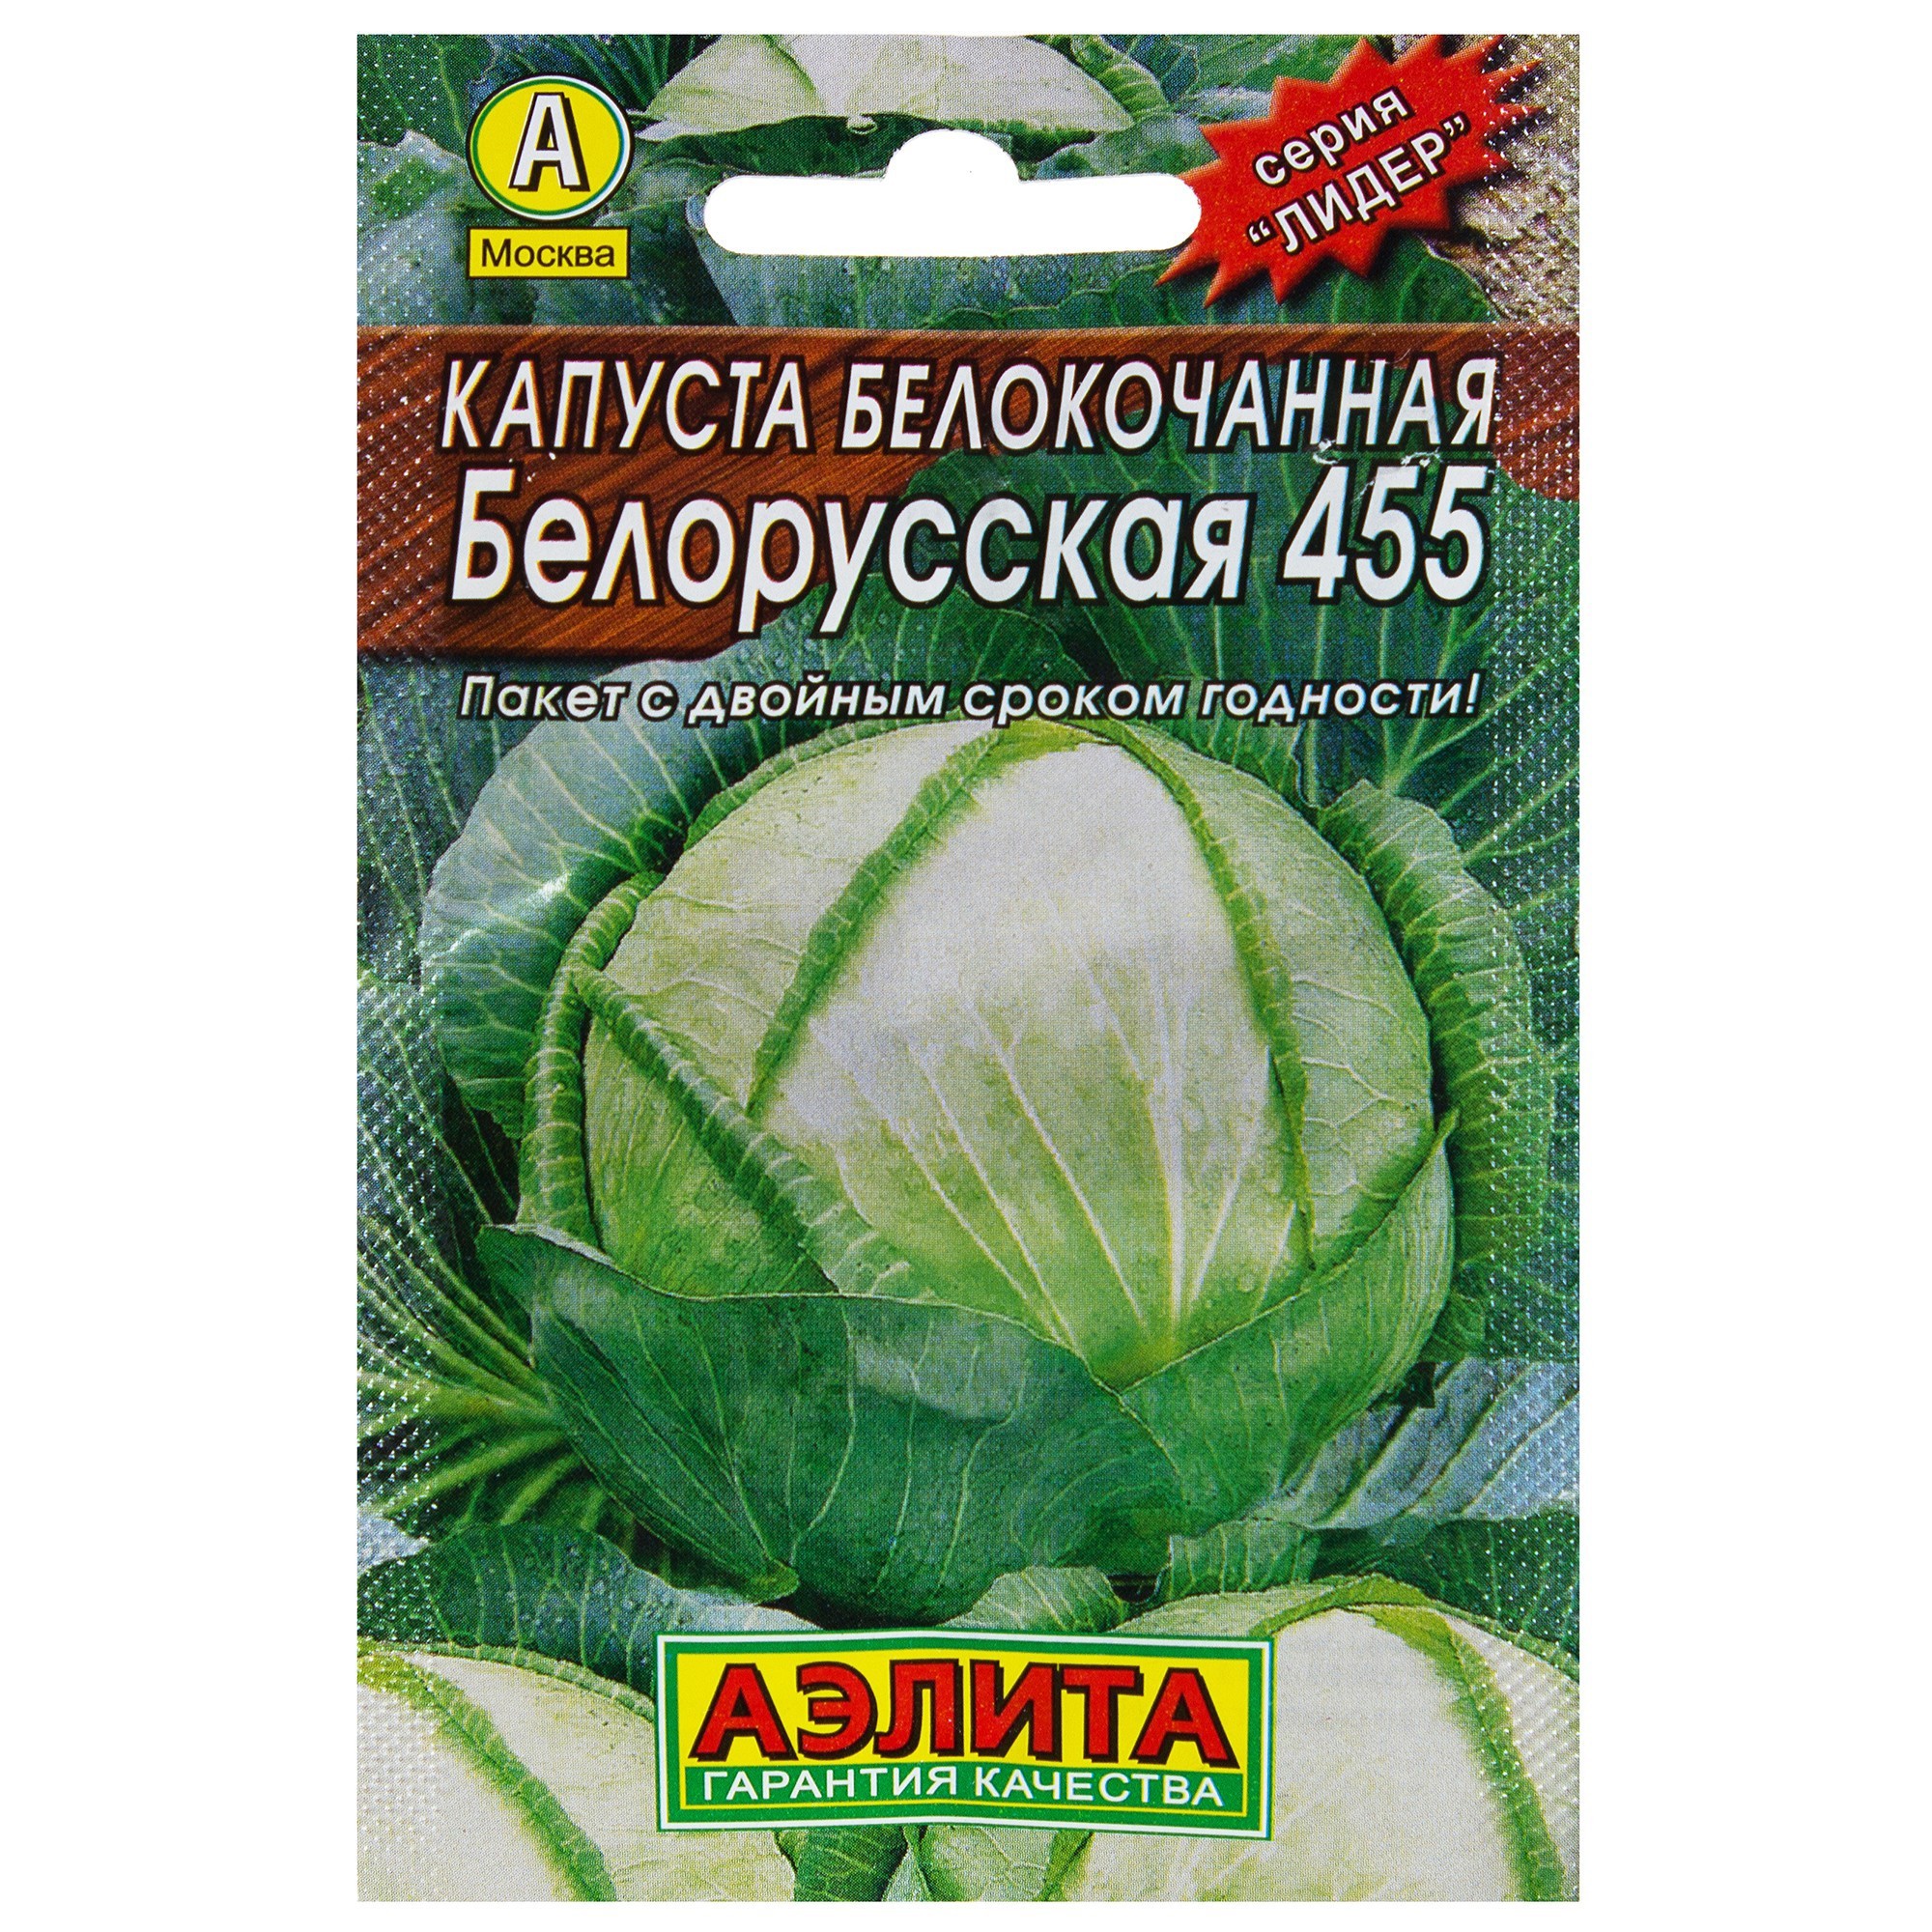 Семена Капуста белокочанная «Белорусская» 455 в Калининграде – купить понизкой цене в интернет-магазине Леруа Мерлен